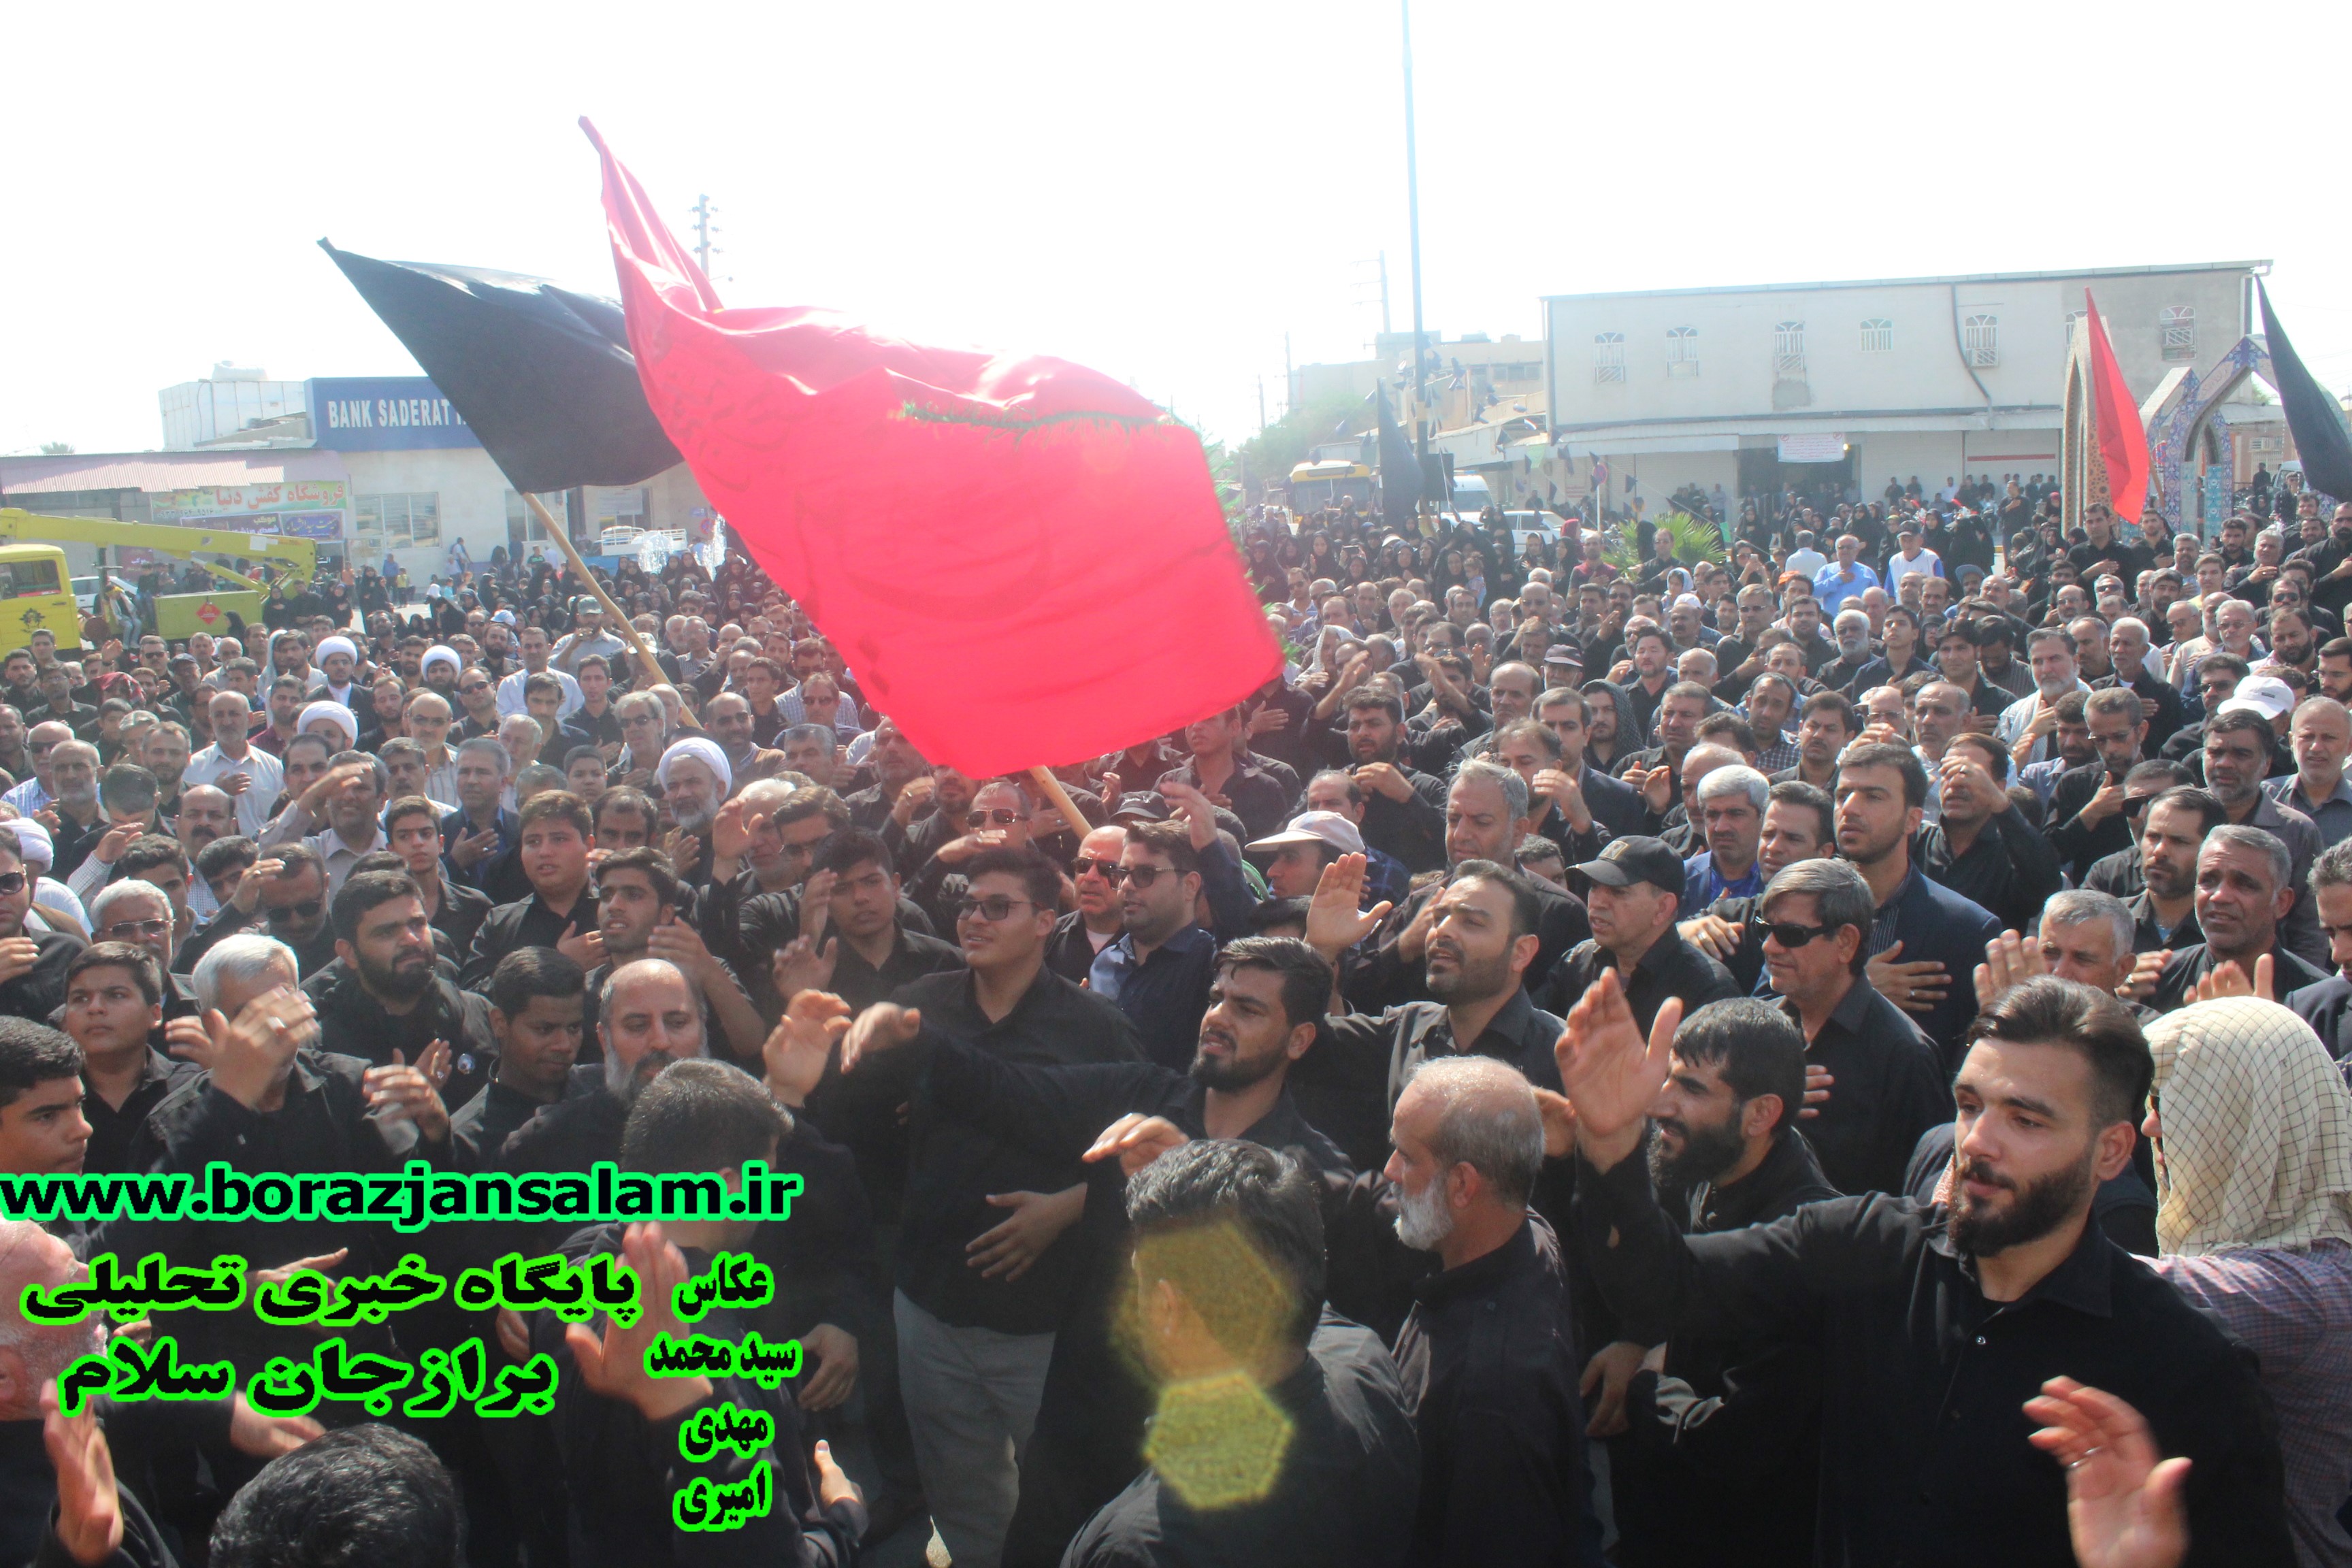 تجمع بزرگ اربعین حسینی در شهر برازجان برگزار شد .